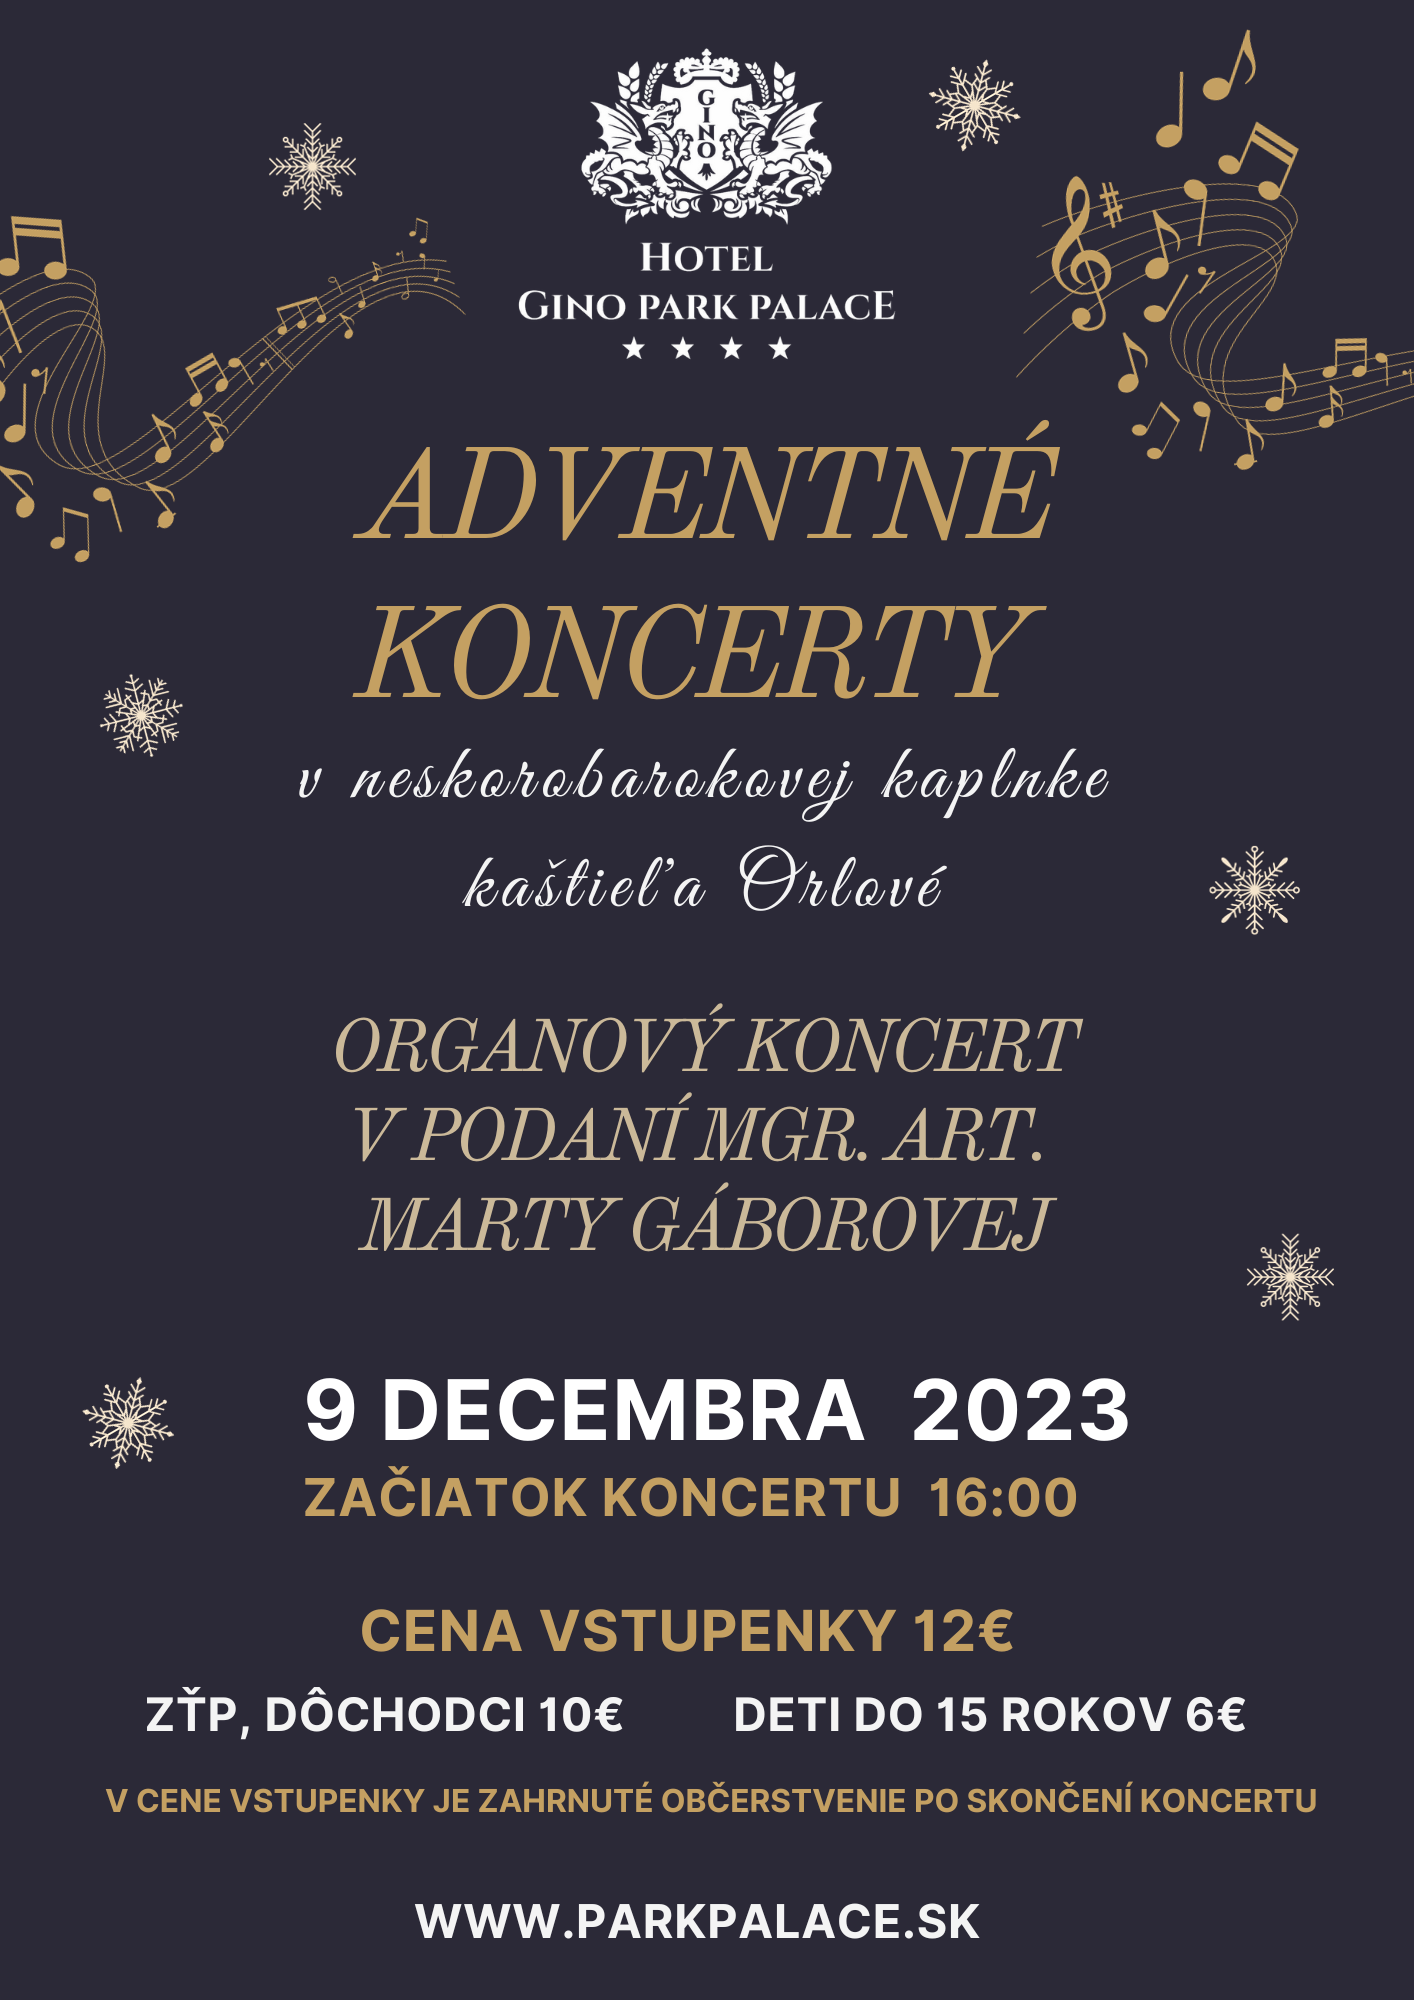 picture Adventné koncerty v kaštieli Orlové